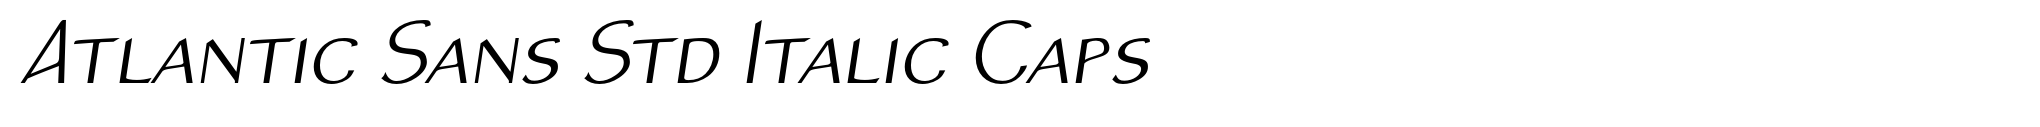 Atlantic Sans Std Italic Caps image